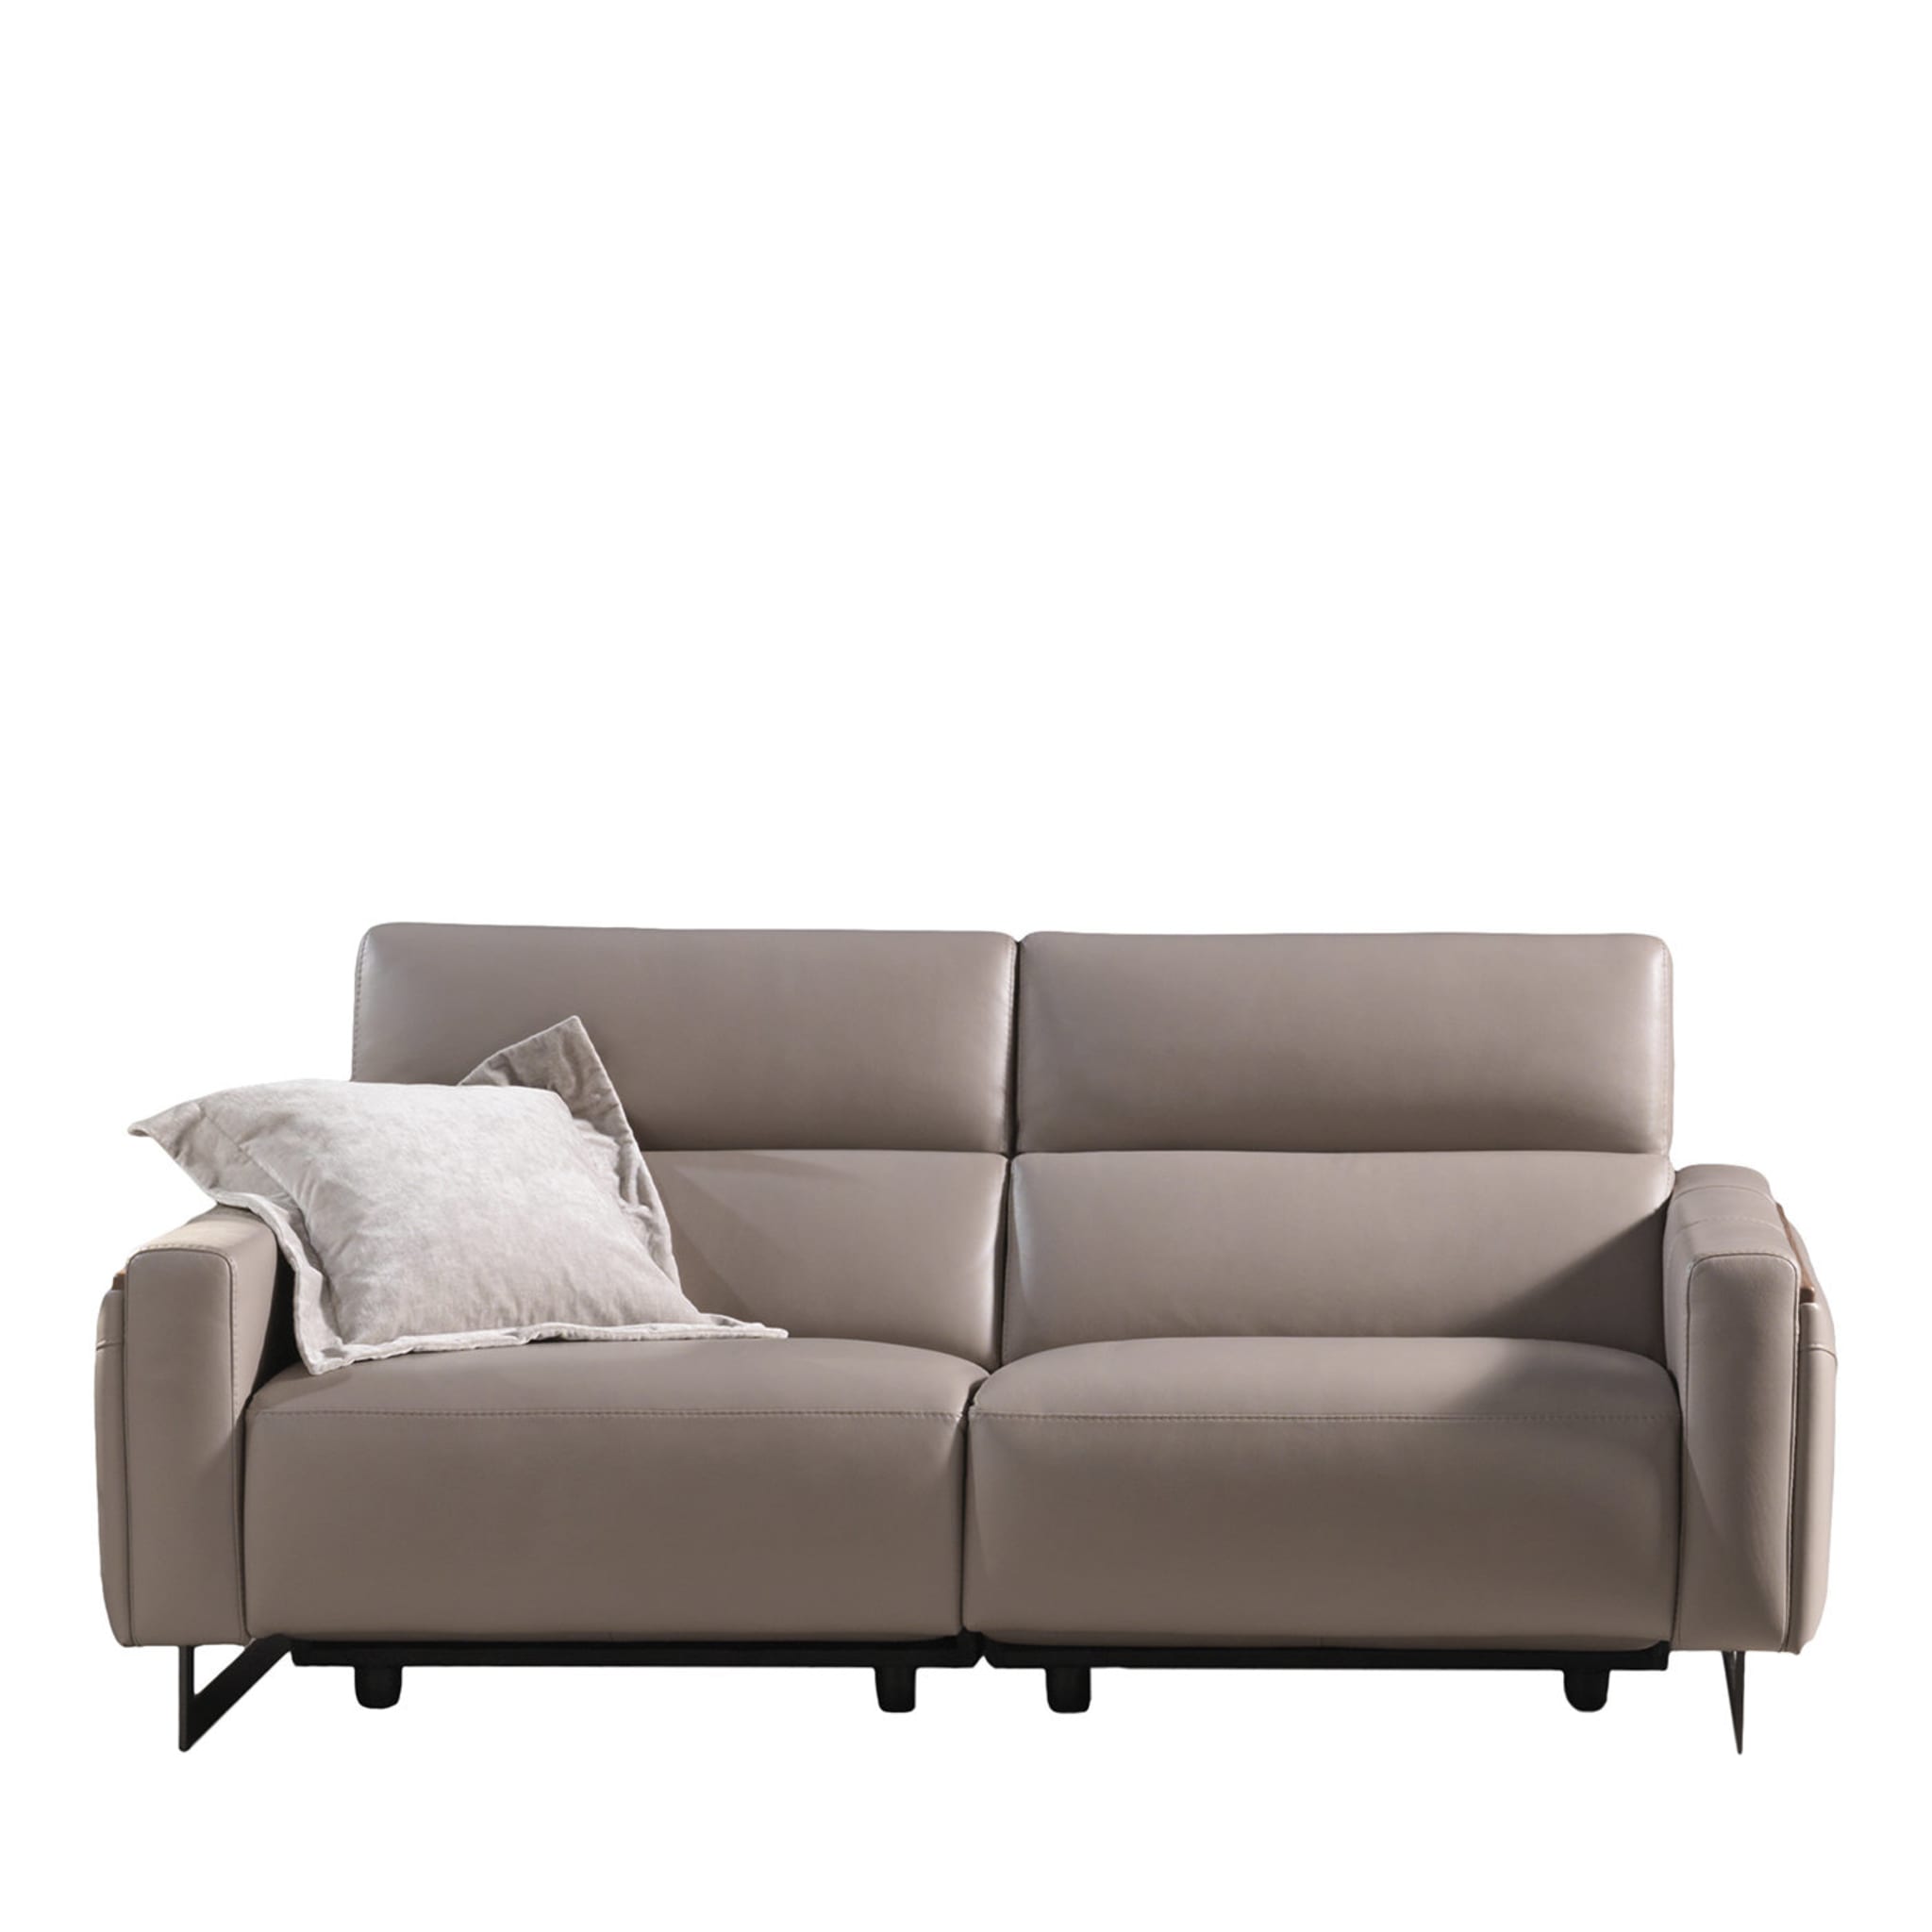 Nazaro Beige Leather 2-Seater Sofa - Main view